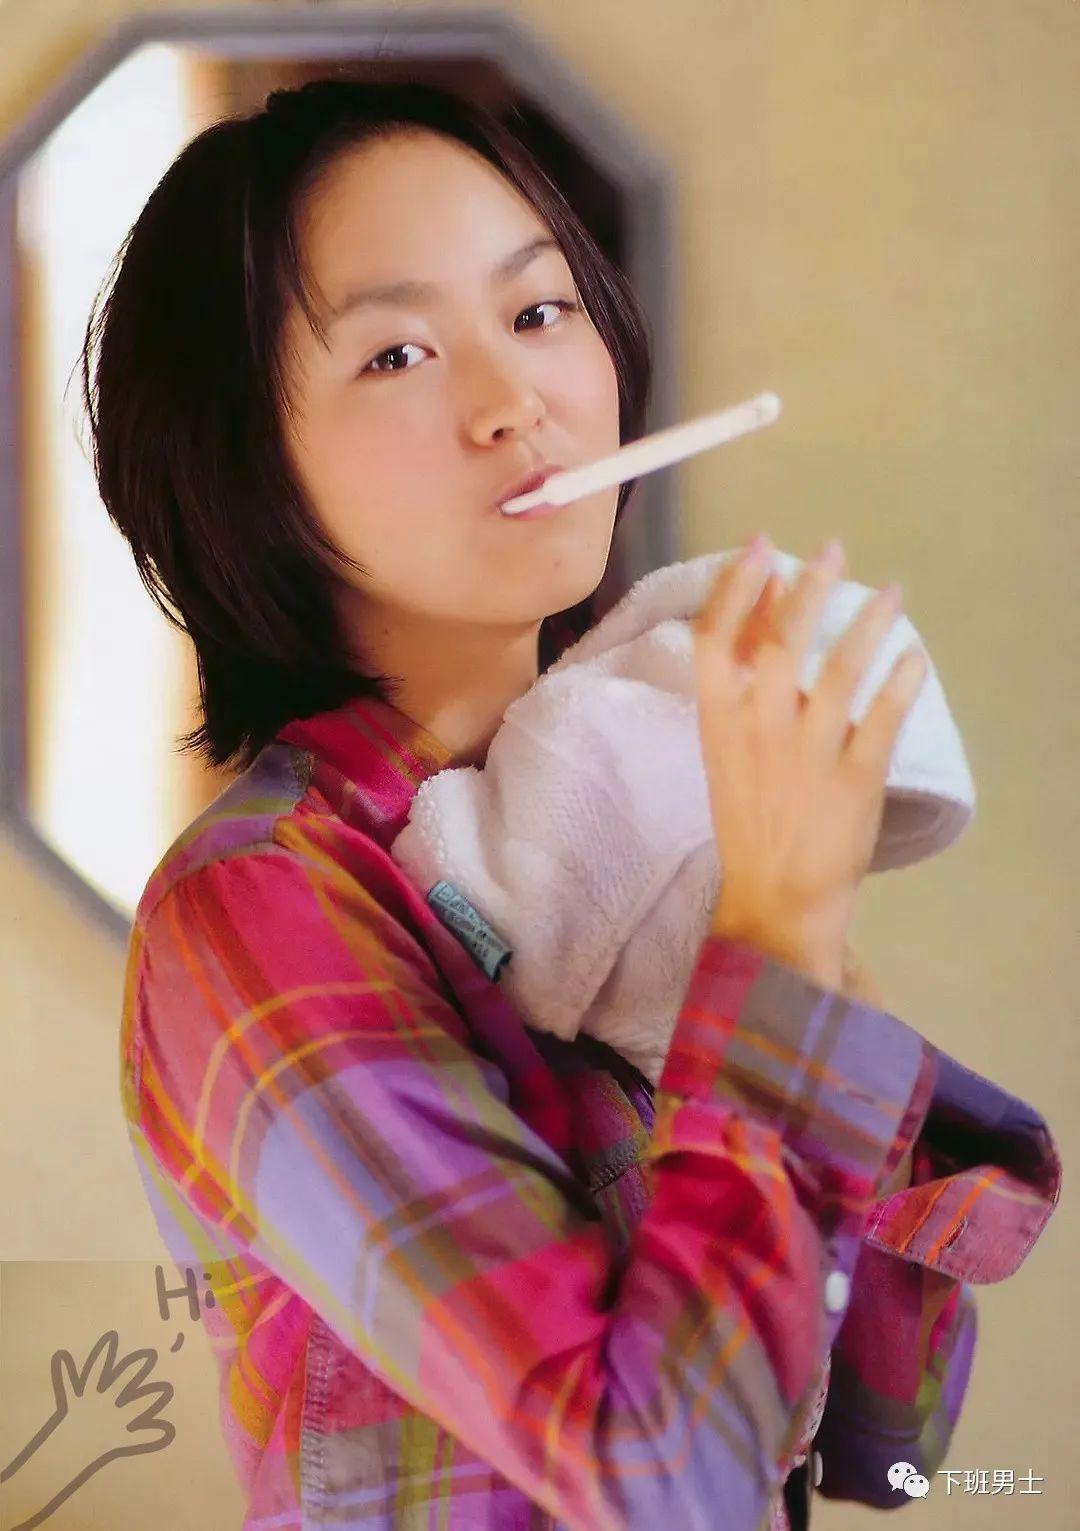 日本女明星朝仓亚纪（Aki Asakura）资料简介及生活照写真集